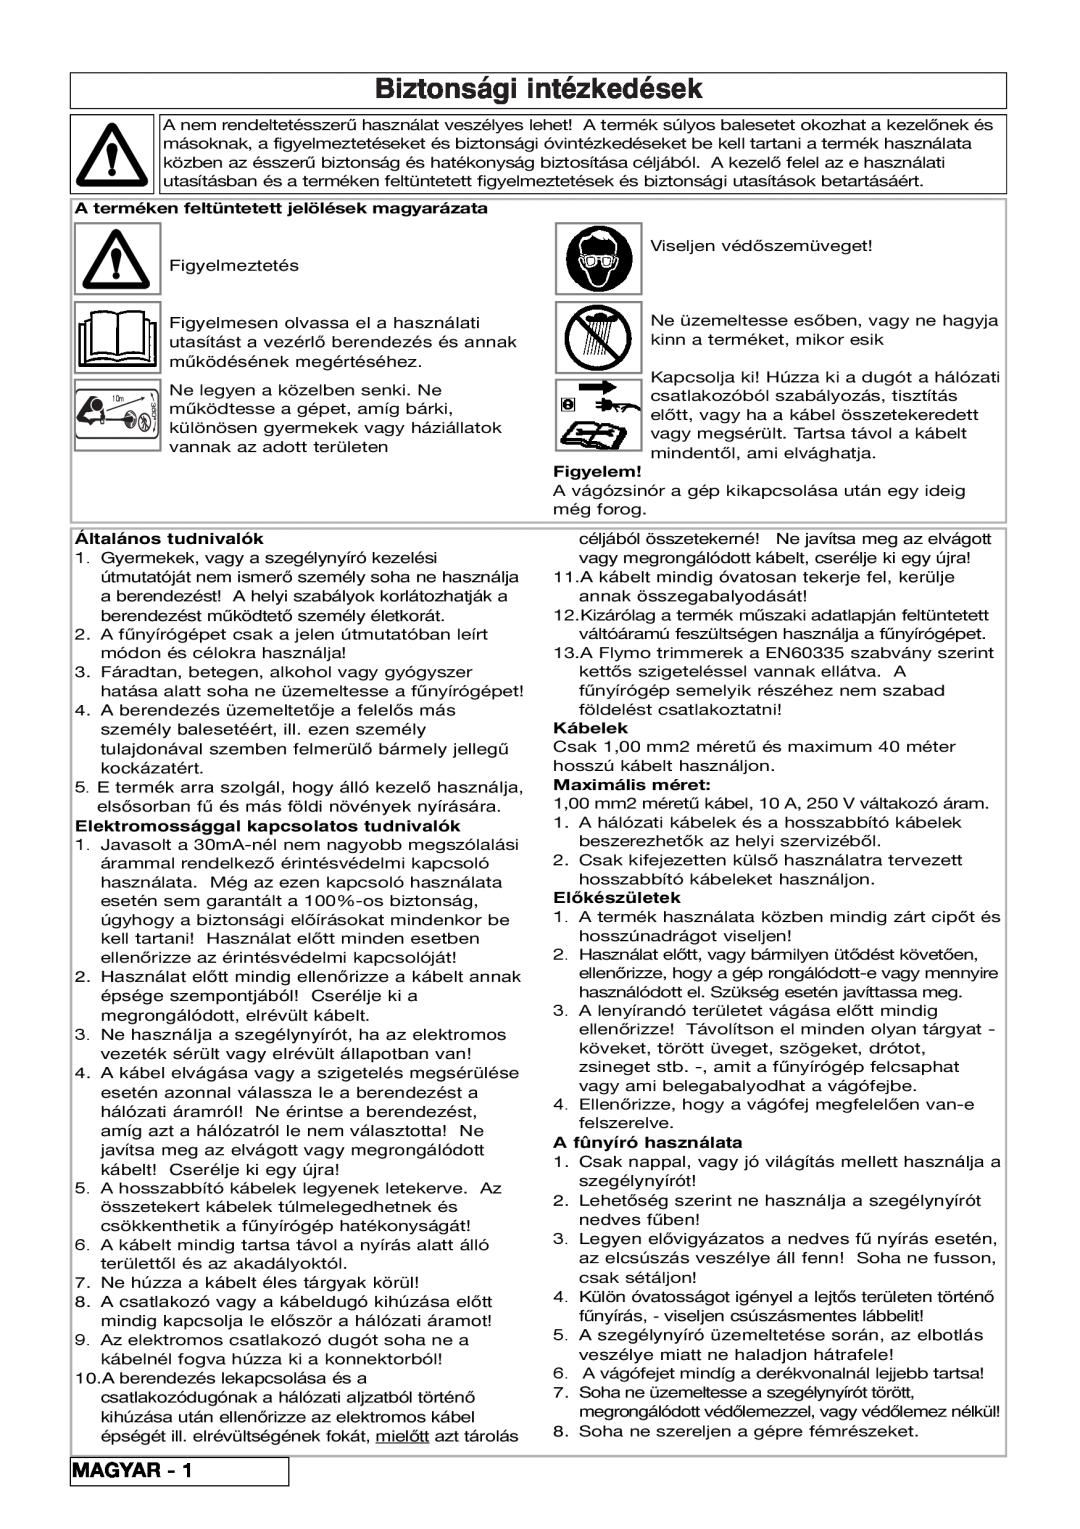 Flymo 800/1000 manual Biztonsági intézkedések, Magyar, A terméken feltüntetett jelölések magyarázata, Figyelem, Kábelek 